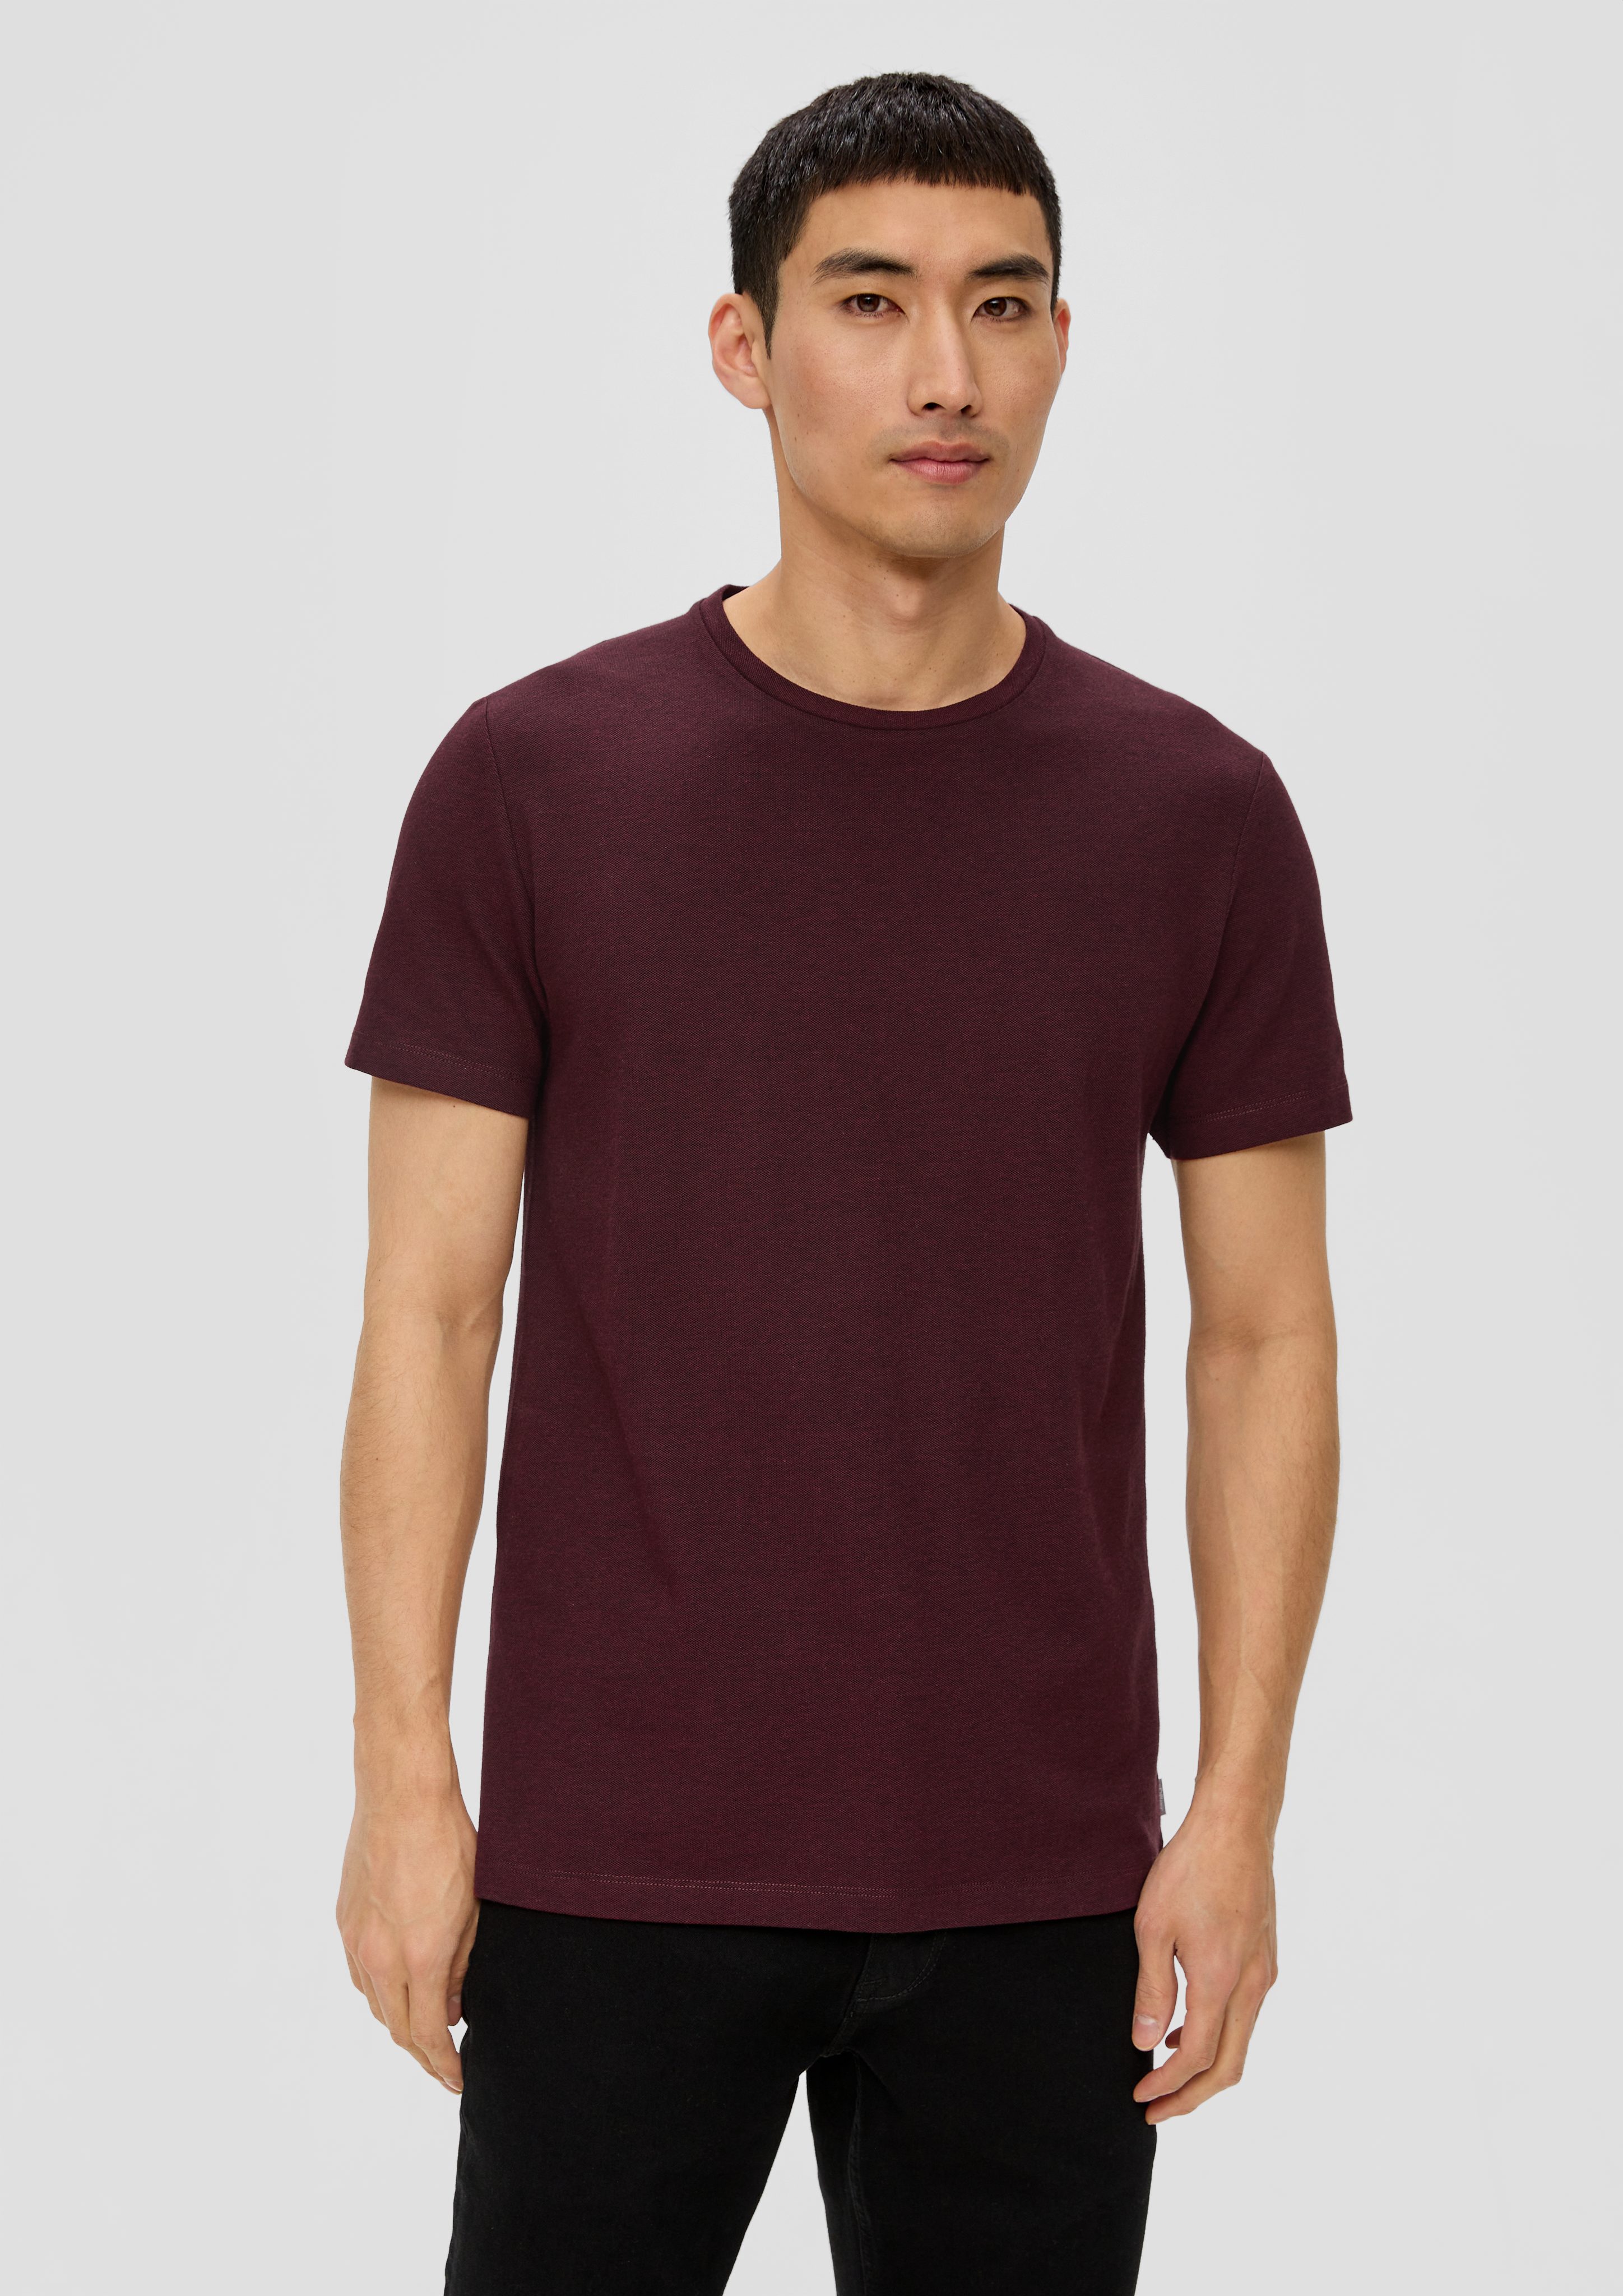 s.Oliver Kurzarmshirt T-Shirt mit Piqué-Struktur Blende bordeaux